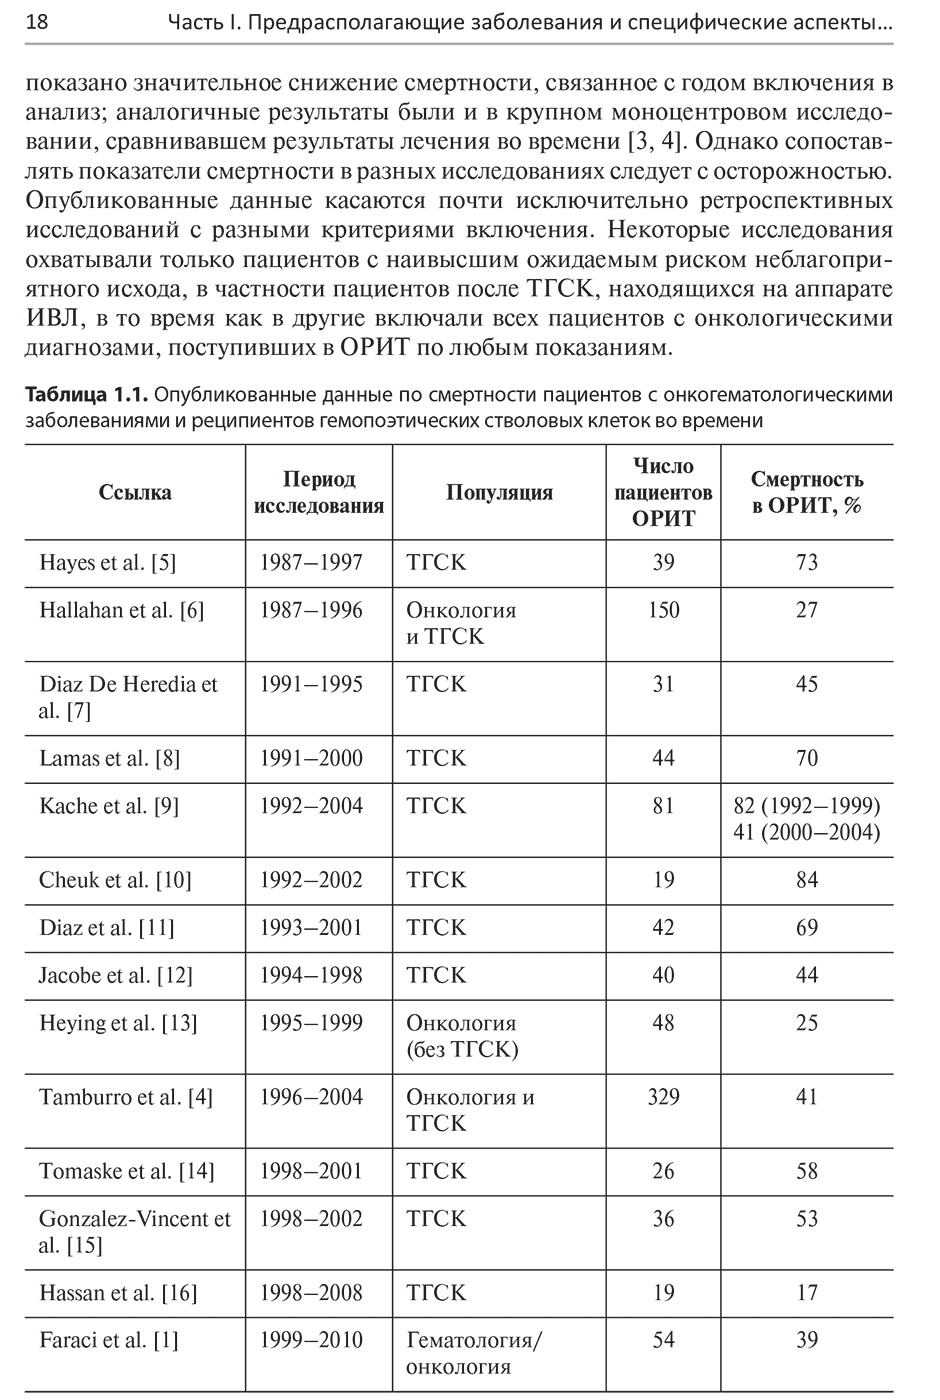 Таблица 1.1. Опубликованные данные по смертности пациентов с онкогематологическими заболеваниями и реципиентов гемопоэтических стволовых клеток во времени